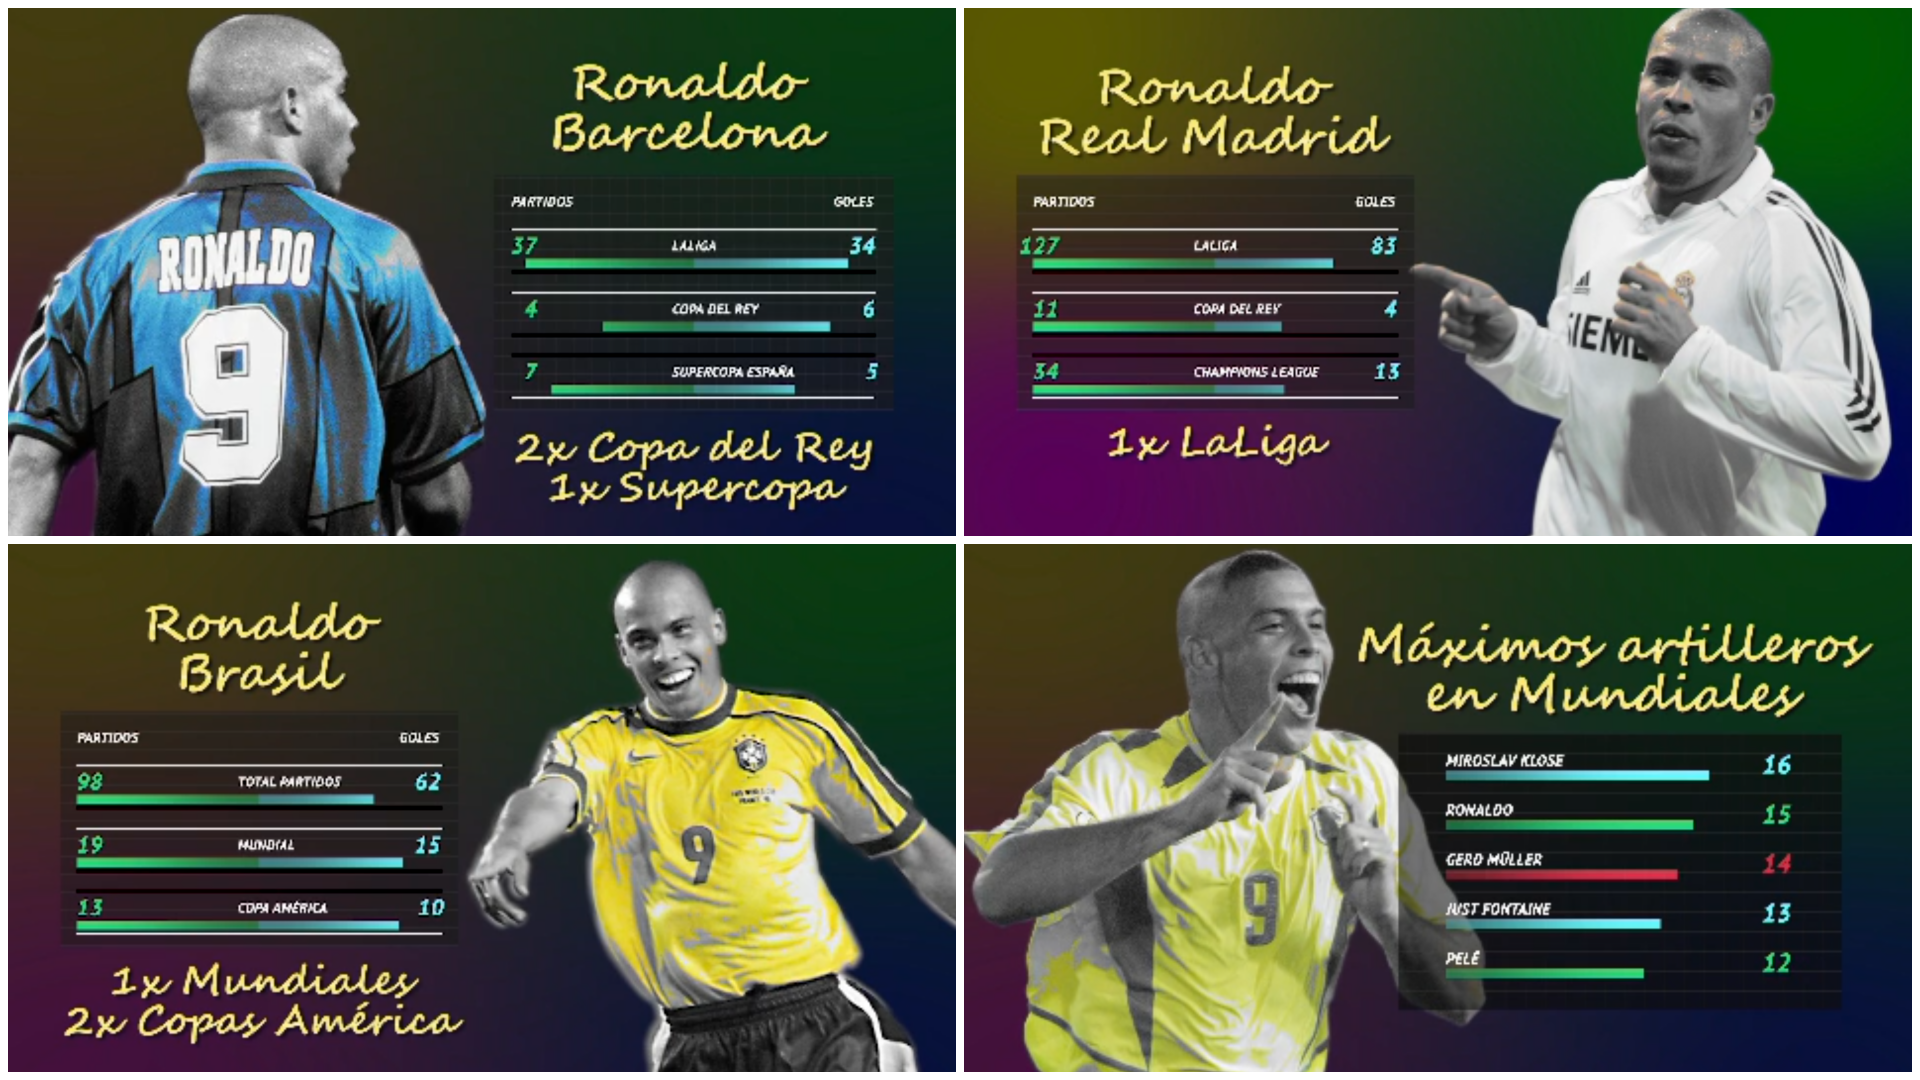 Iconos del fútbol Así fue la carrera de Ronaldo, el fenómeno Cuántos